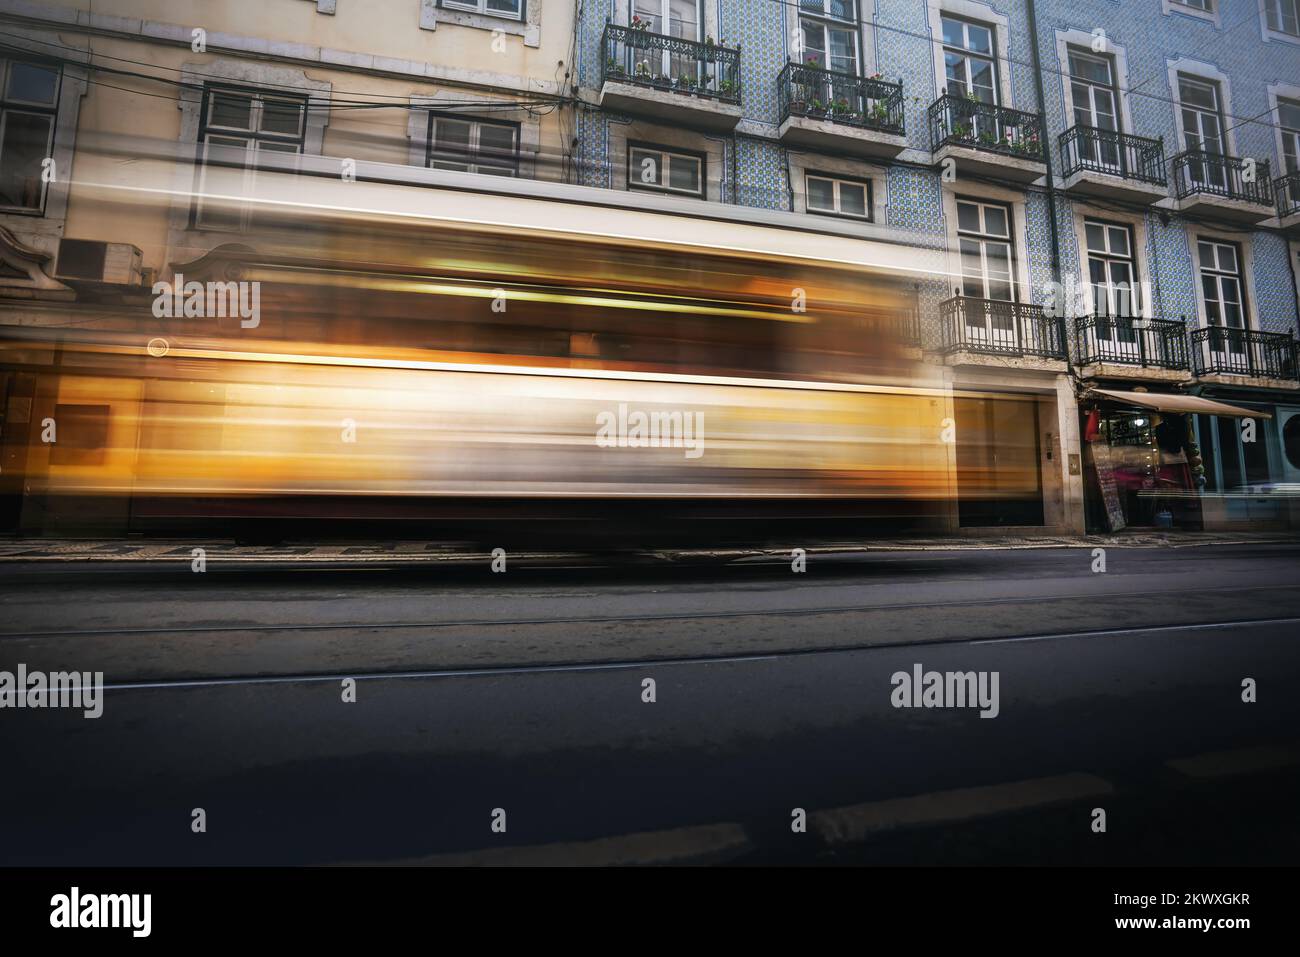 Gelbe Straßenbahn in einer Straße von Lissabon - Lissabon, Portugal Stockfoto